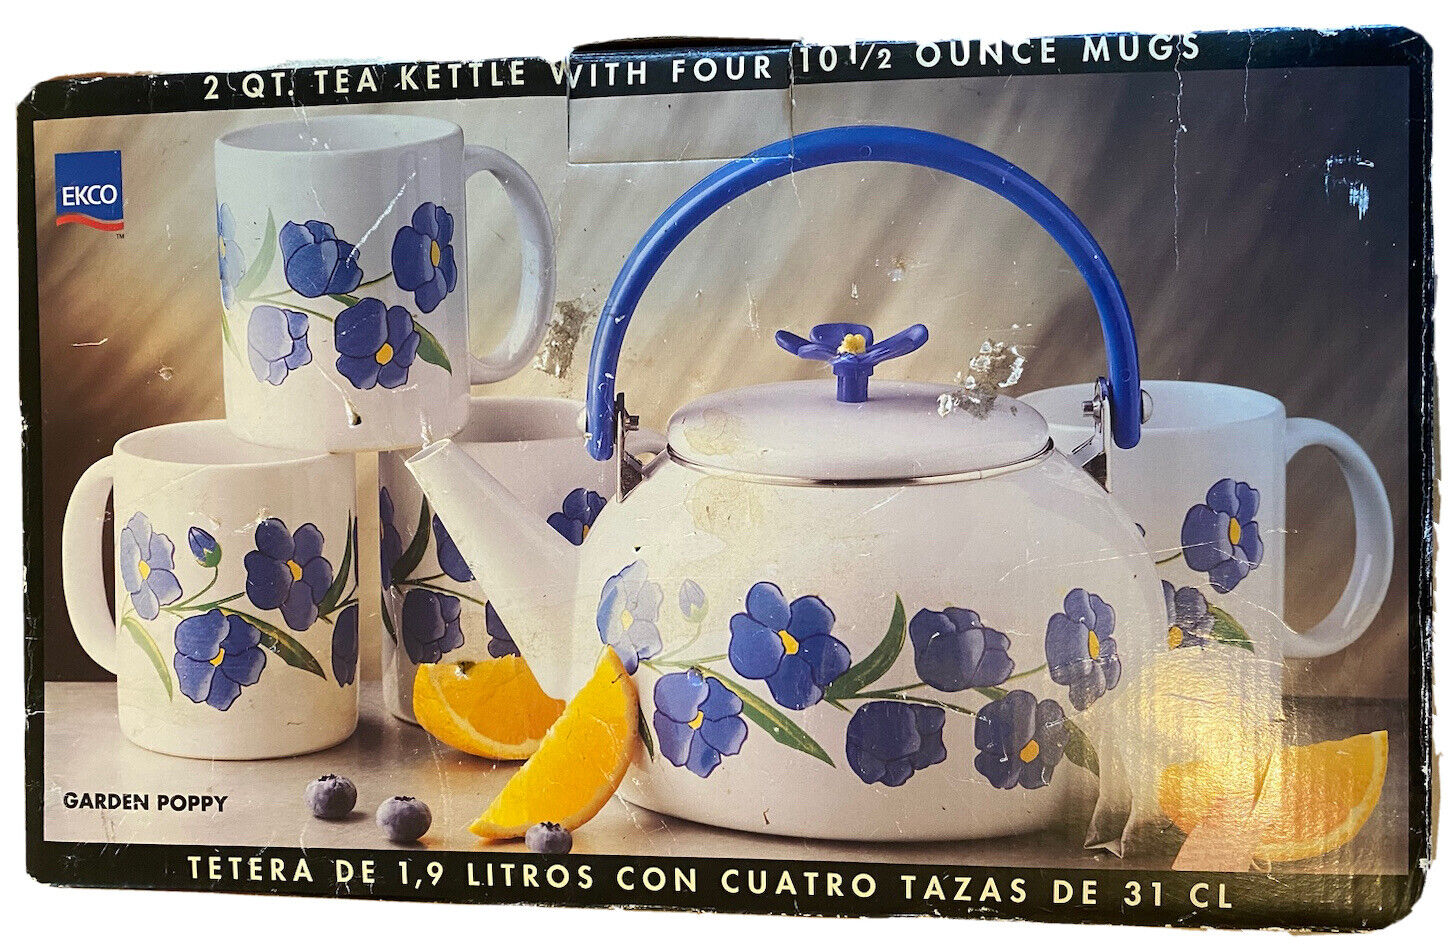 Tea Kettle & 4 Mug Set. Ecko 2 qt. Garden Poppy Beautiful Ceramic NEW Open Box